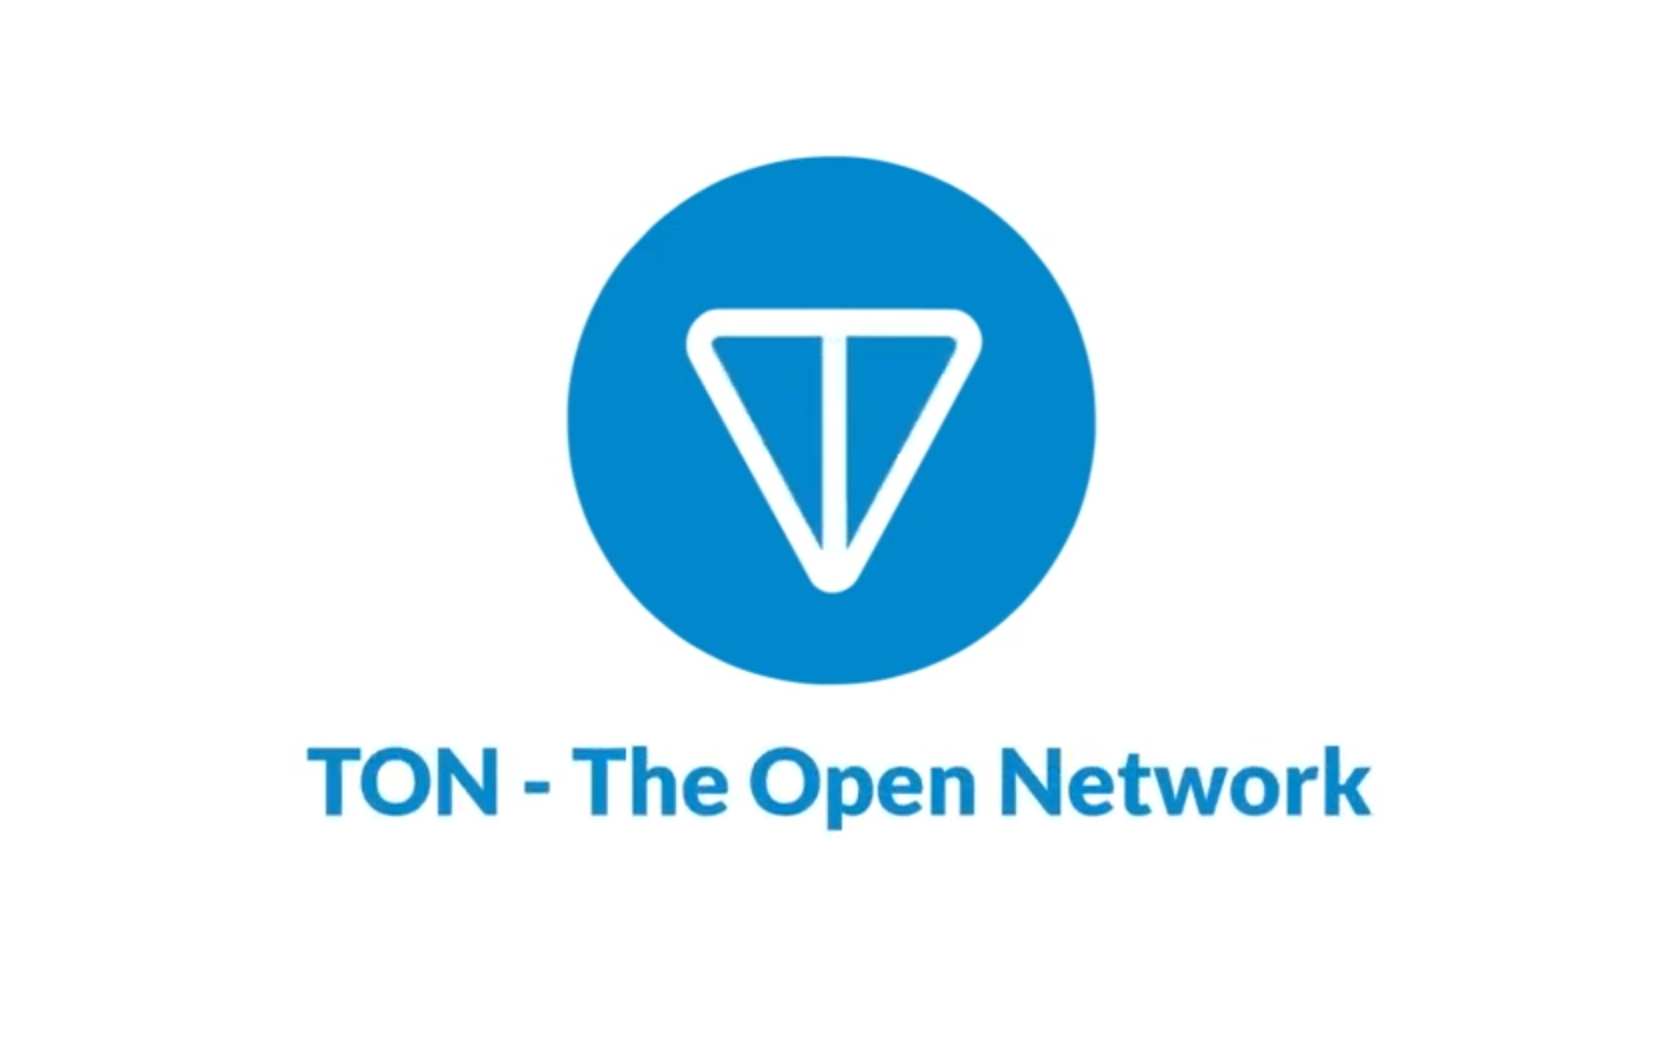 The open network ton. Ton в телеграмме. Лого the open Network. Telegram open Network ton.